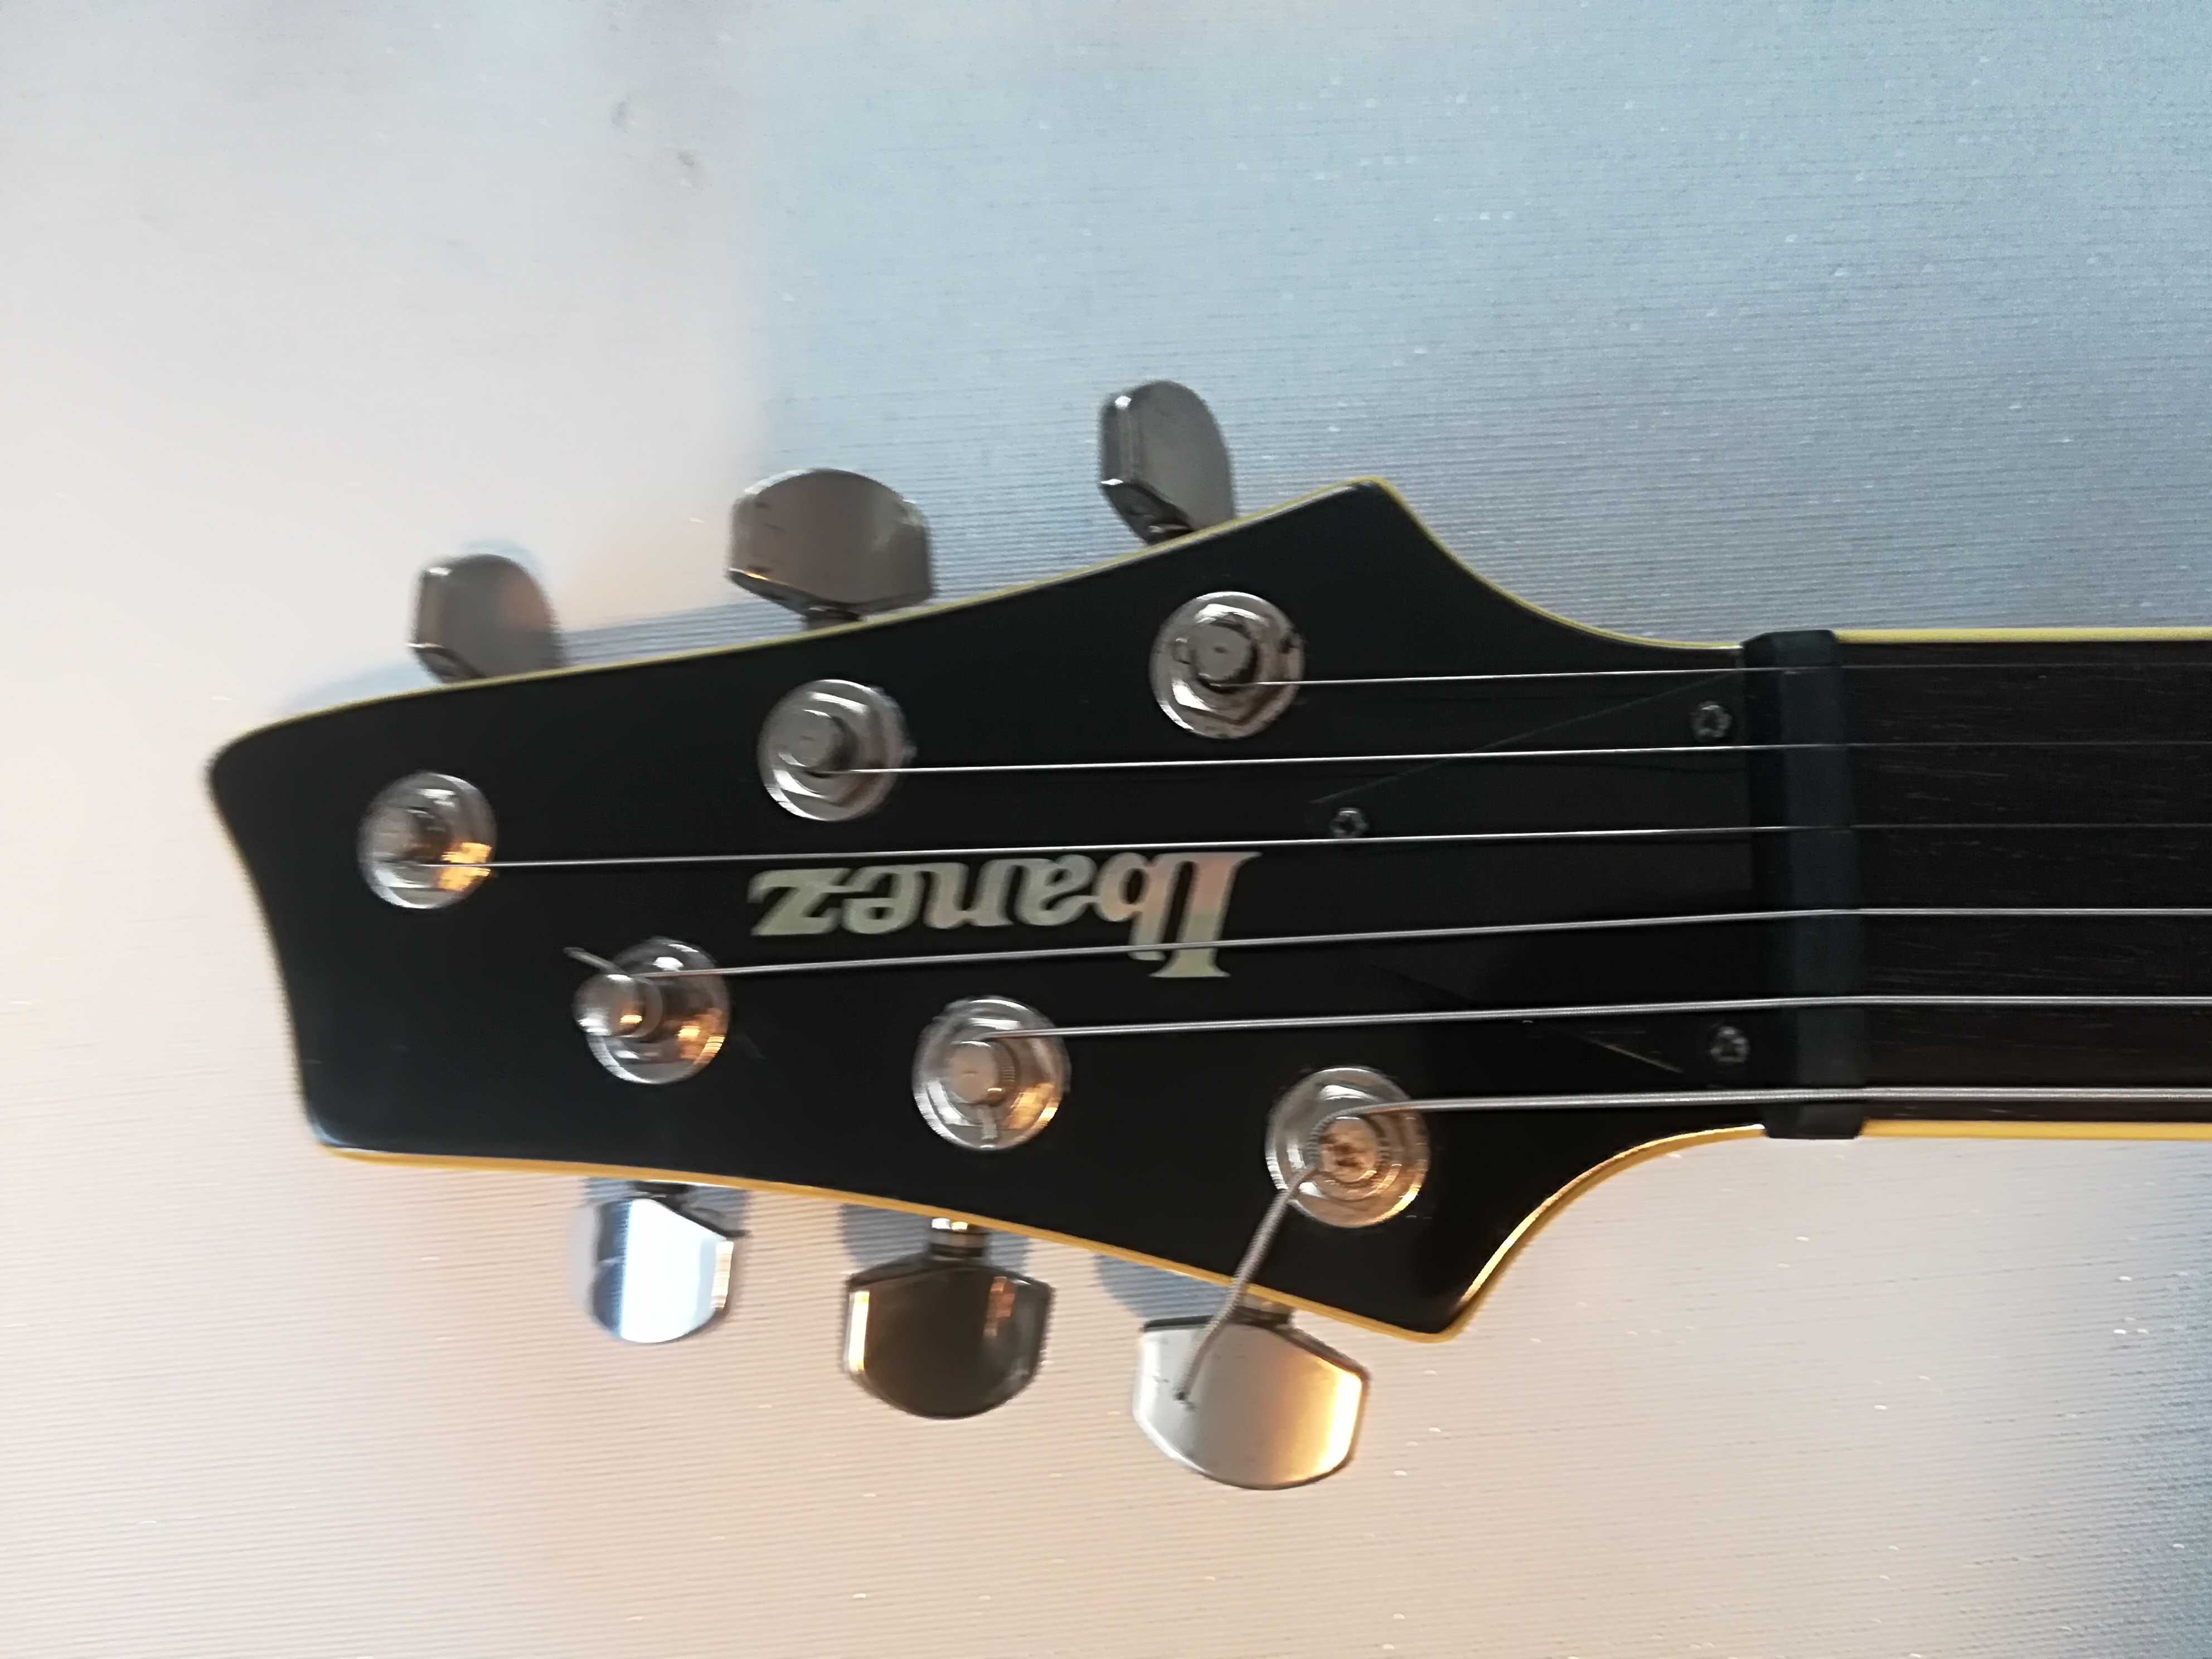 Ibanez SZ320 gitara elektryczna z systemem piezzo